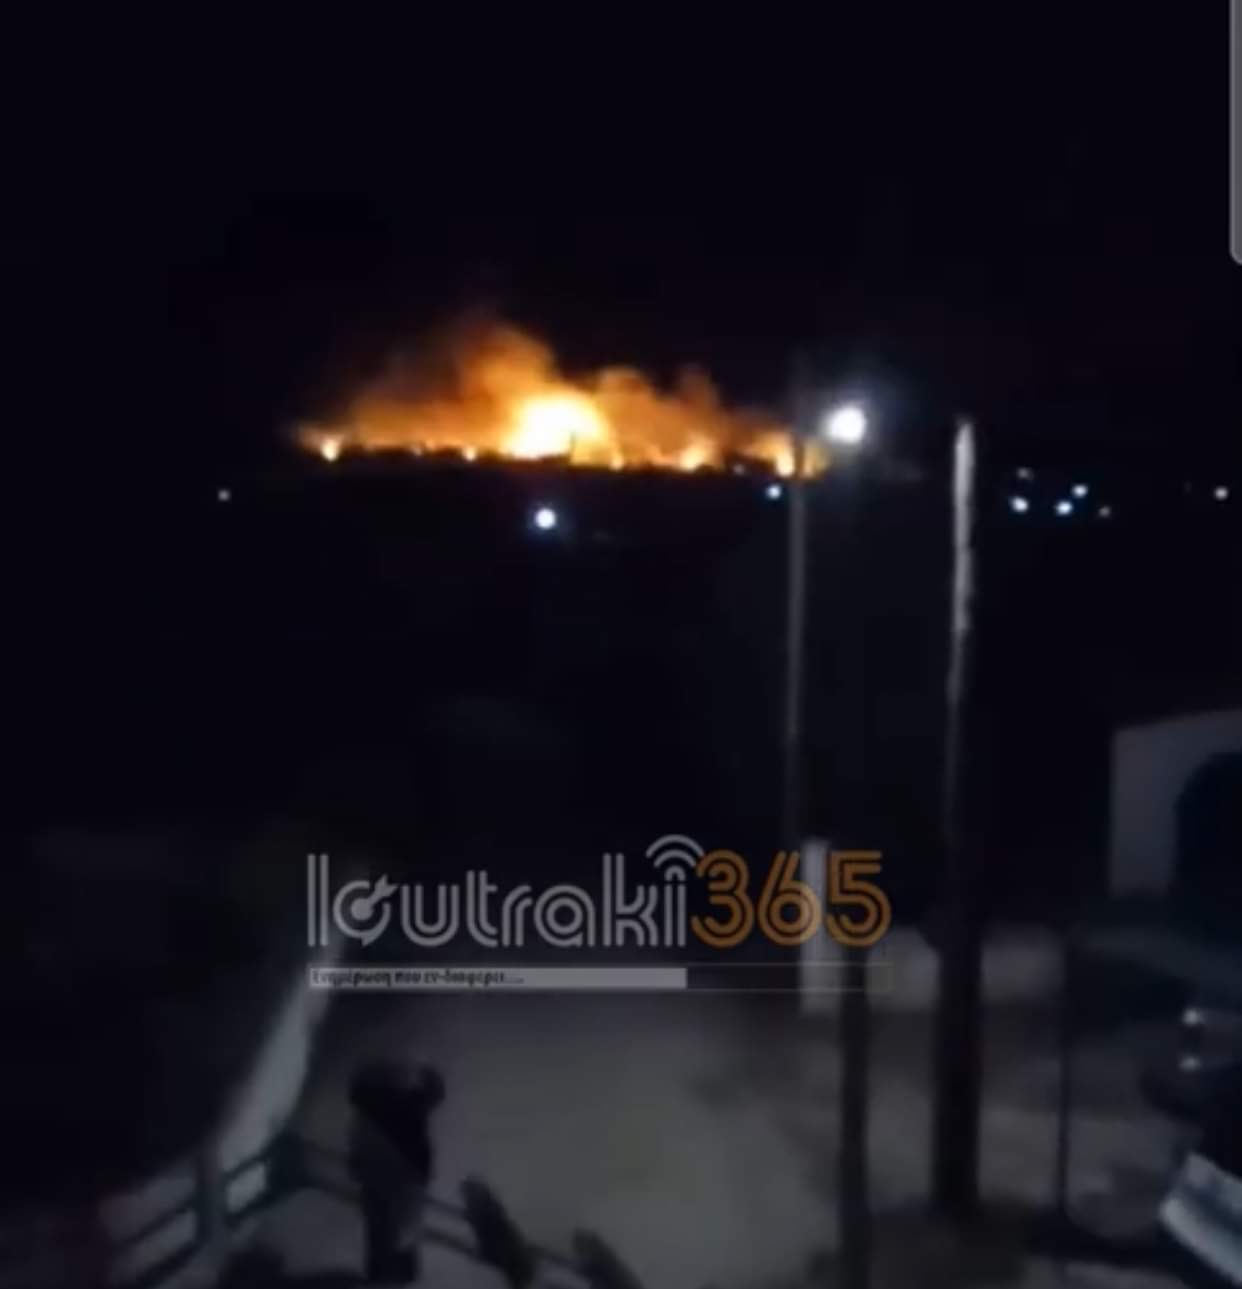 Δύσκολη νύχτα στην Κορινθία -Μεγάλη φωτιά στο Σχίνο -Εκκενώθηκαν οικισμοί, κάηκαν τρία κτίσματα [βίντεο]